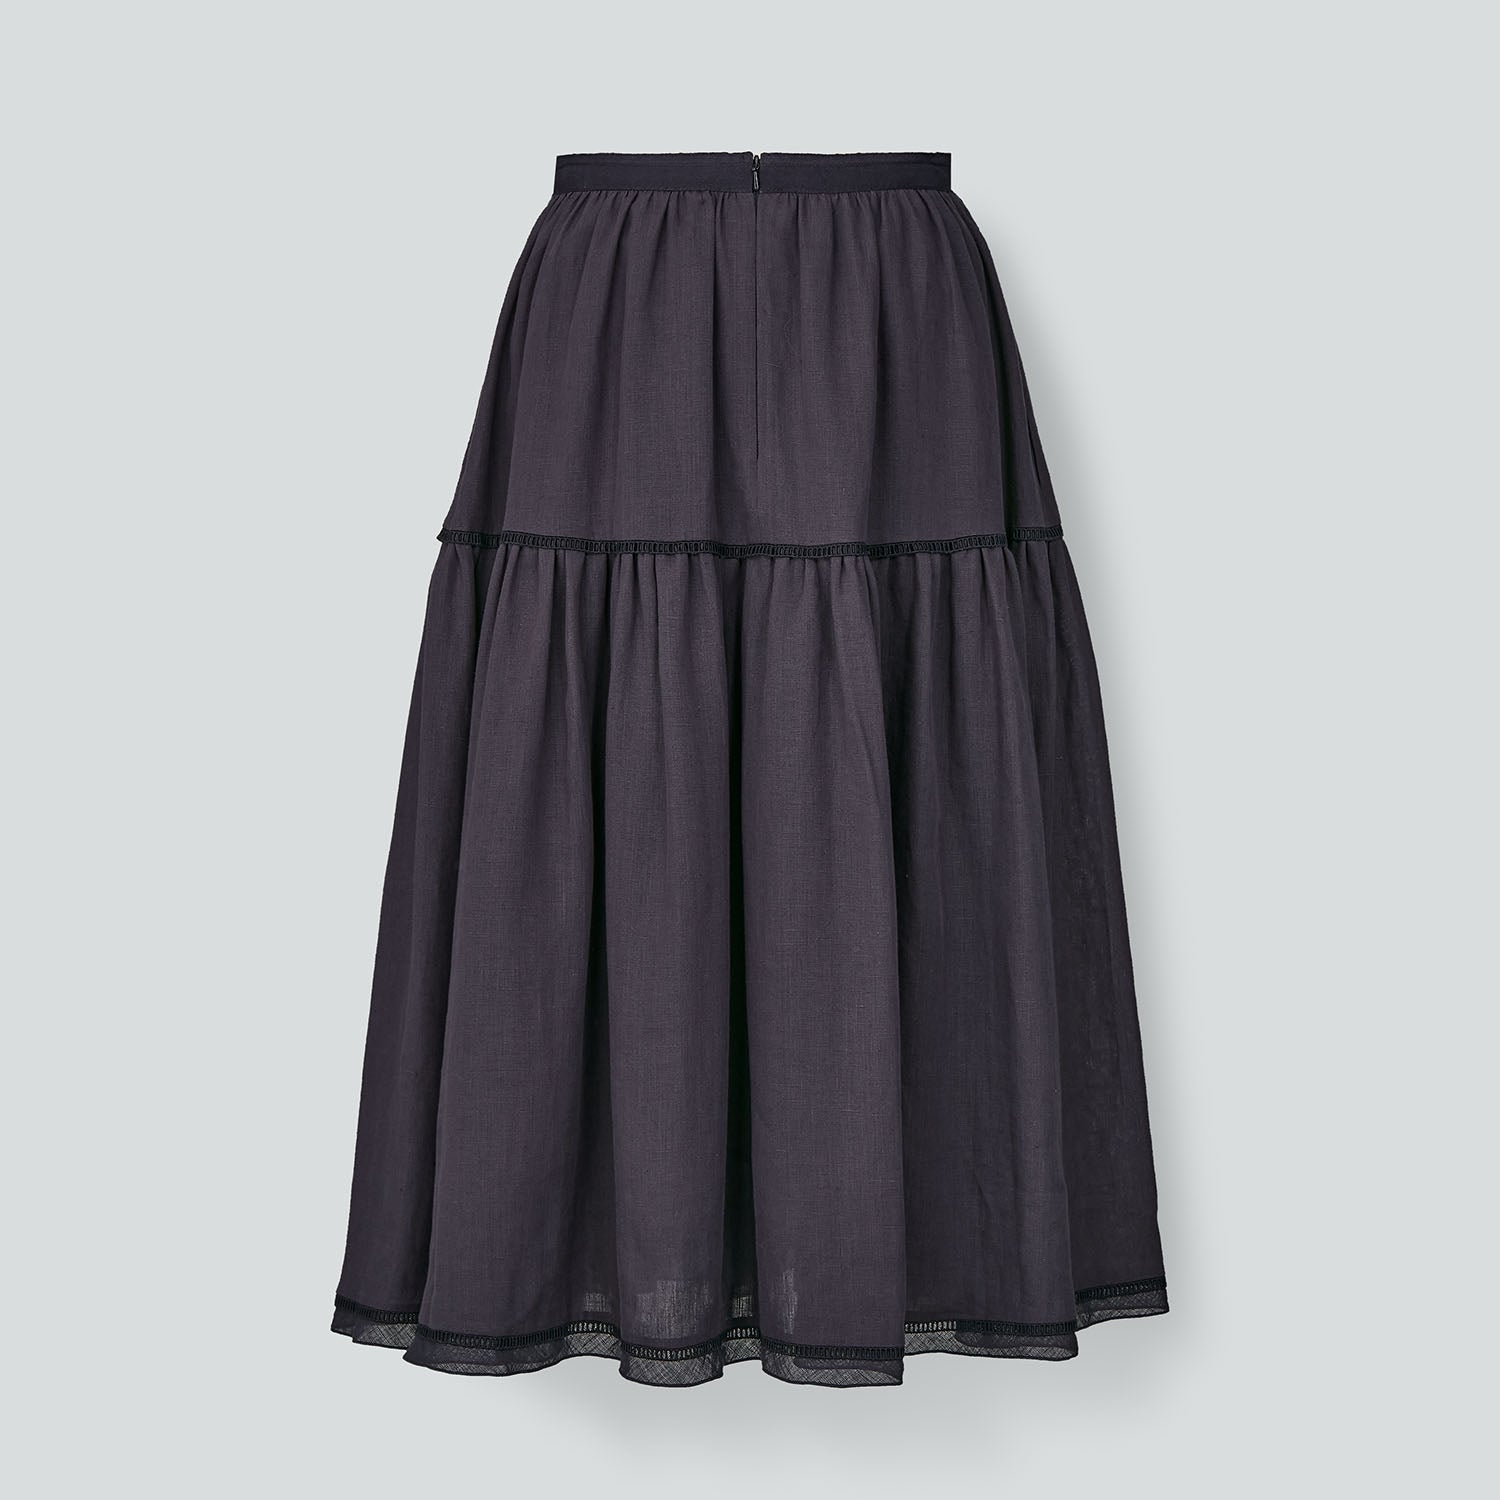 44165 Skirt "Manoir"